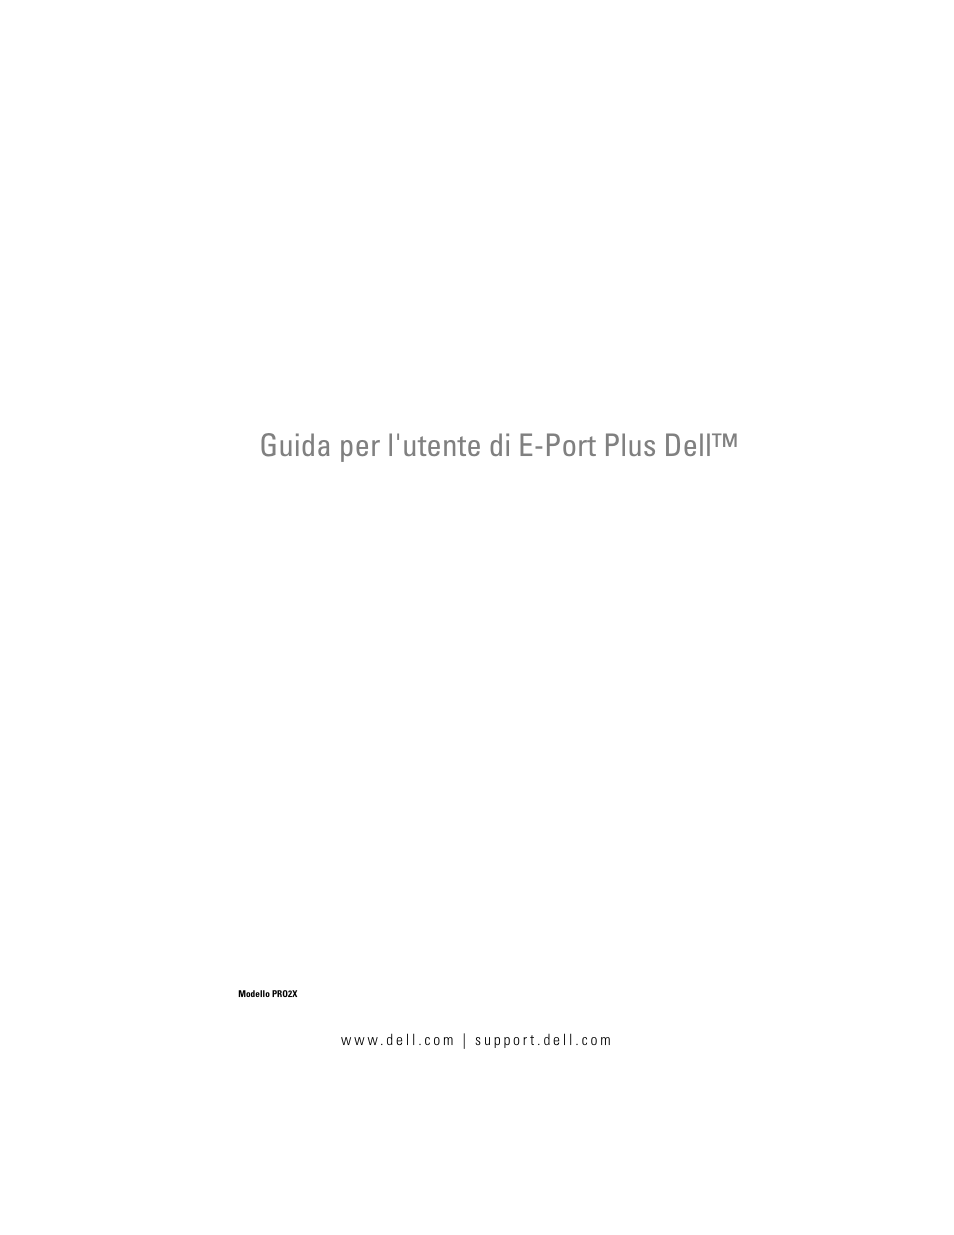 Dell E-Port Plus Manuale d'uso | Pagine: 22